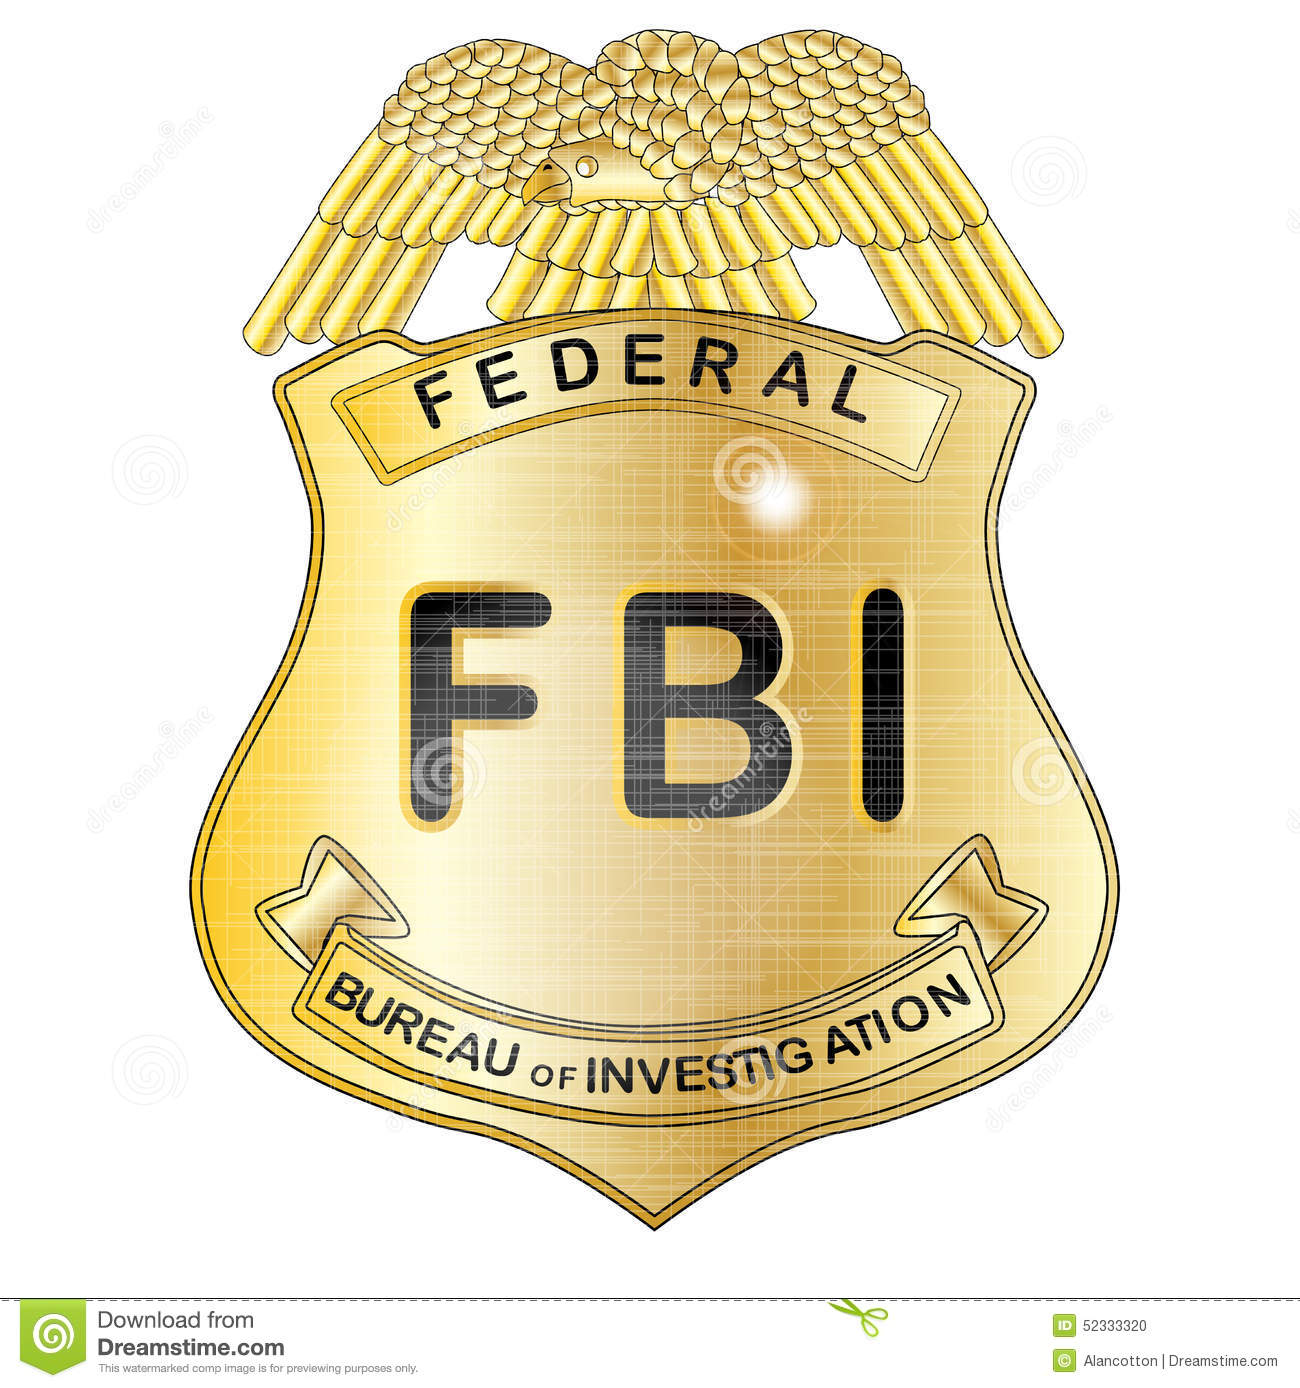 FBI - O que Significa?